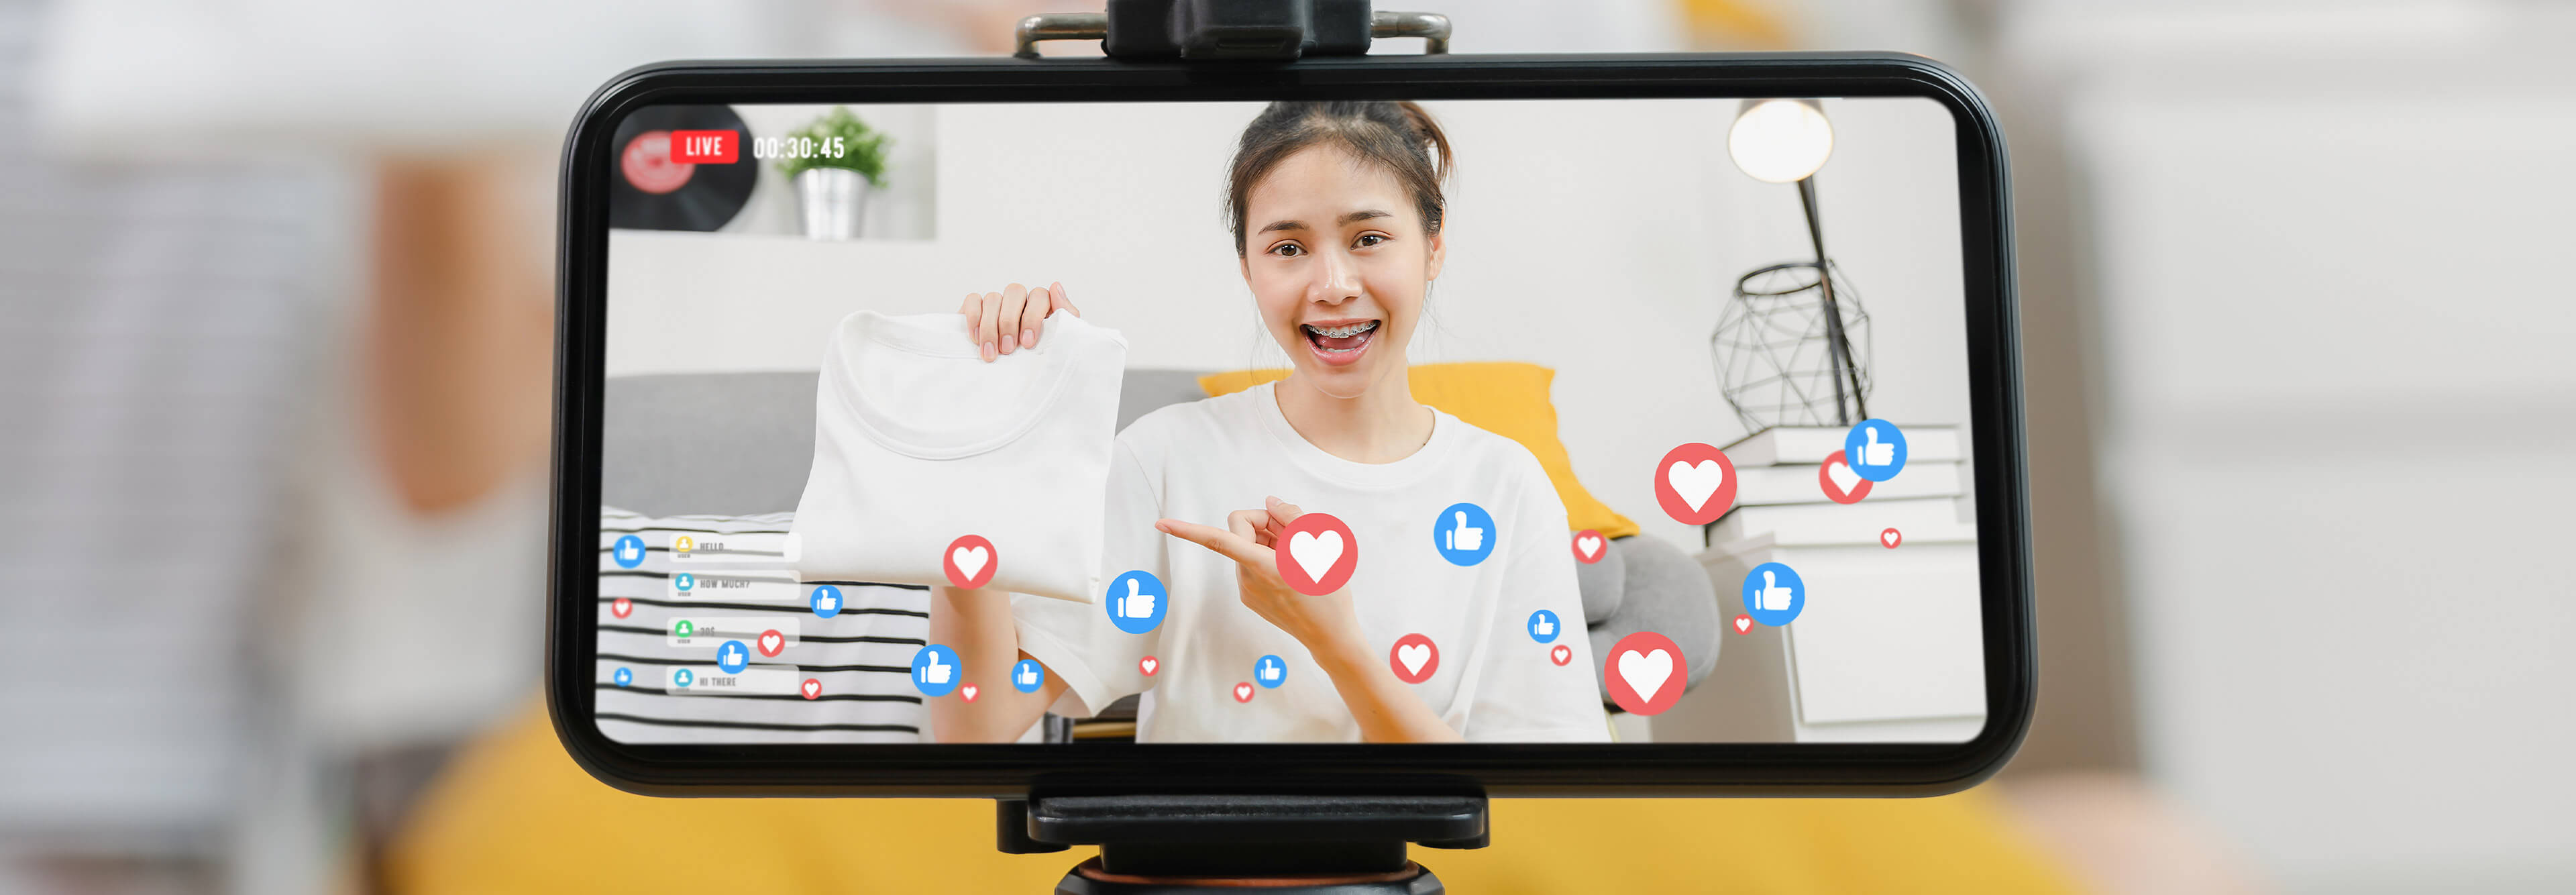 Smartphonebildschirm - Live Shopping in China zeigt